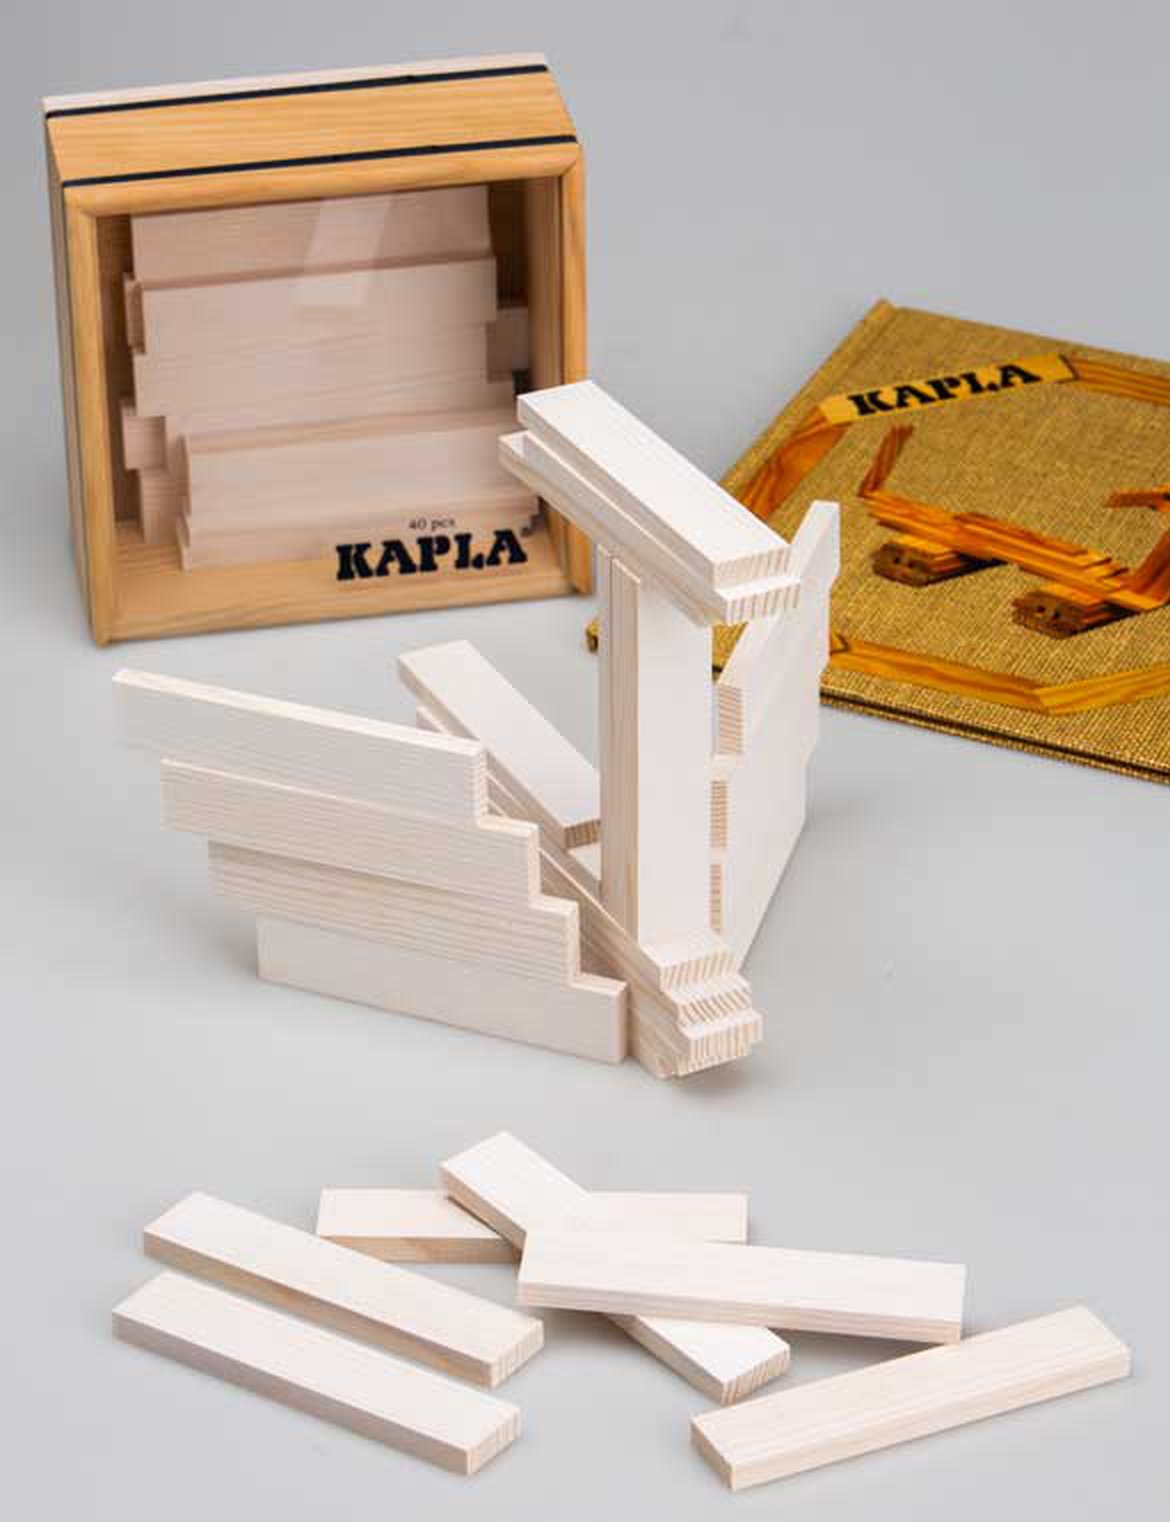 Jeux de construction kapla